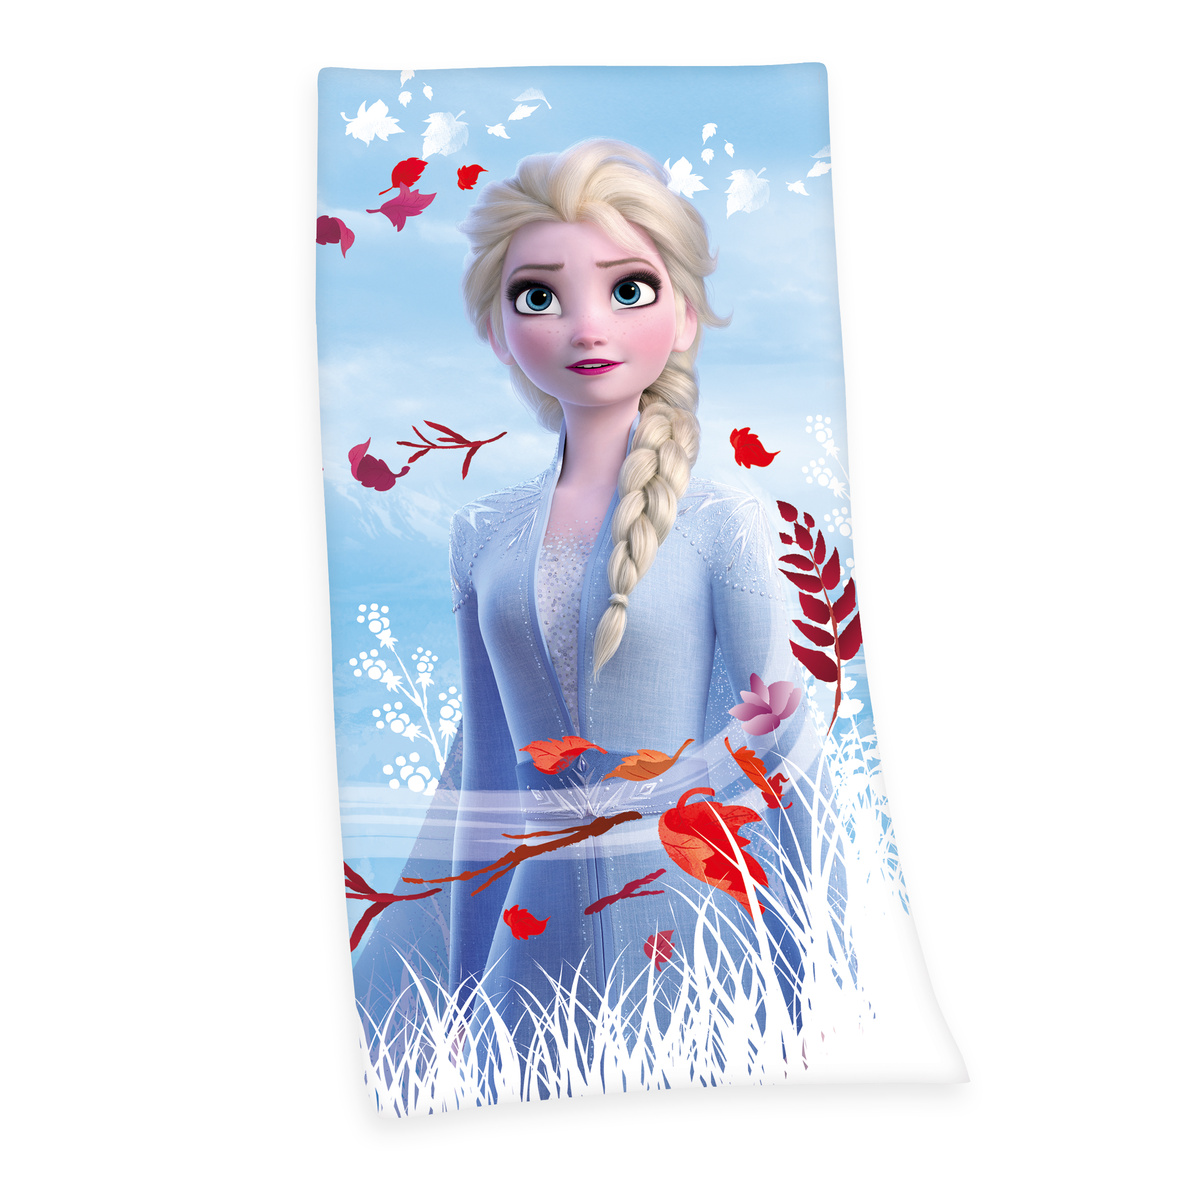 Prosop Frozen 2 Believe journey, 75 x 150 cm e4home.ro